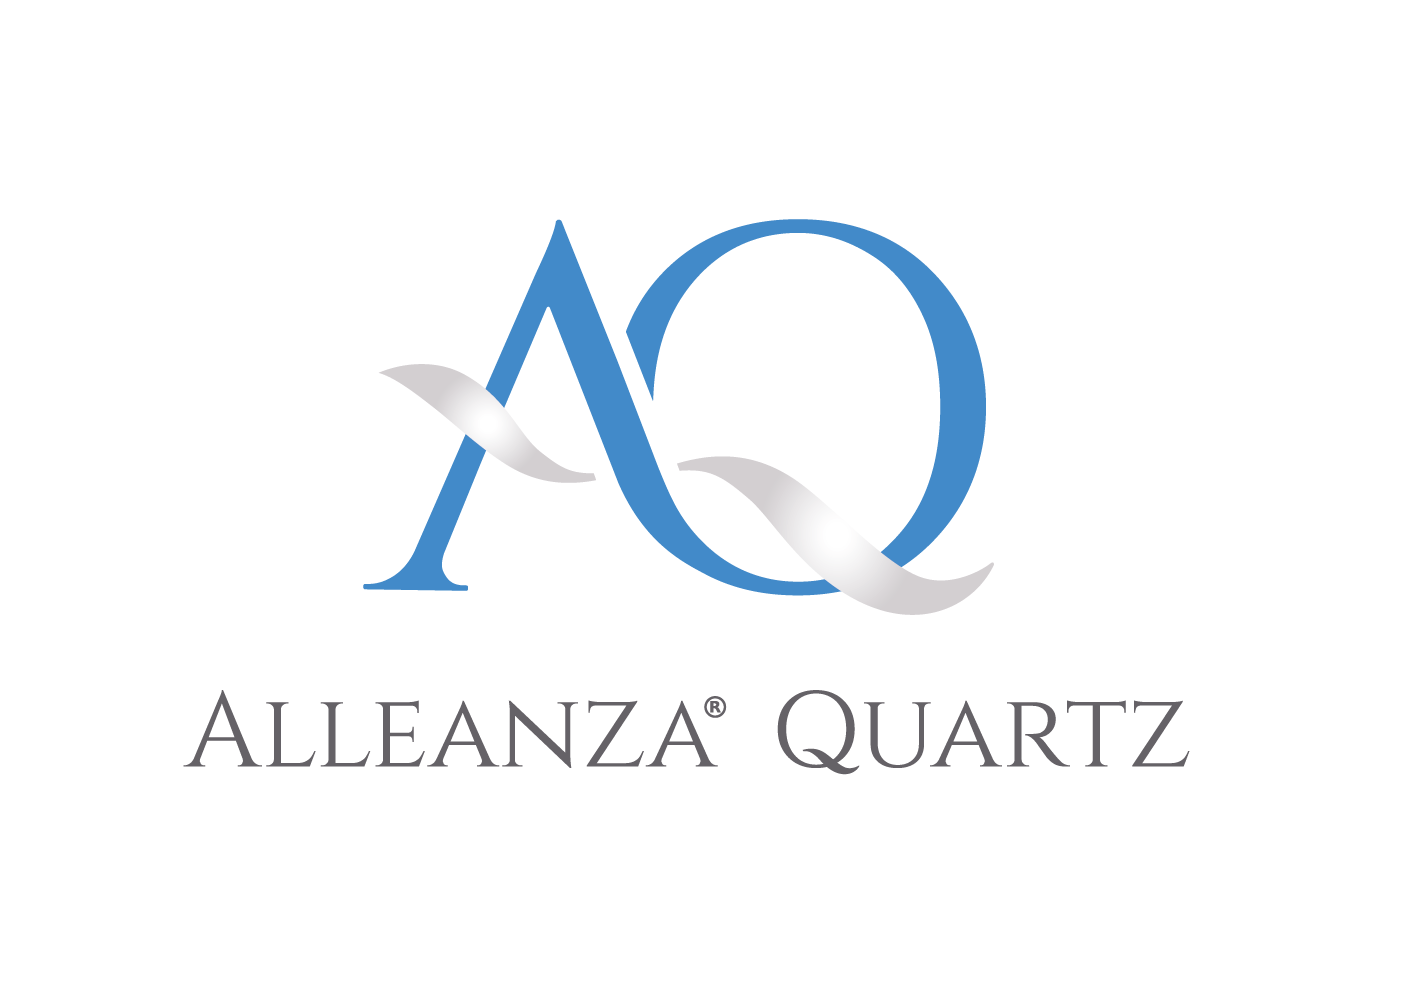 AQ Alleanza Quartz